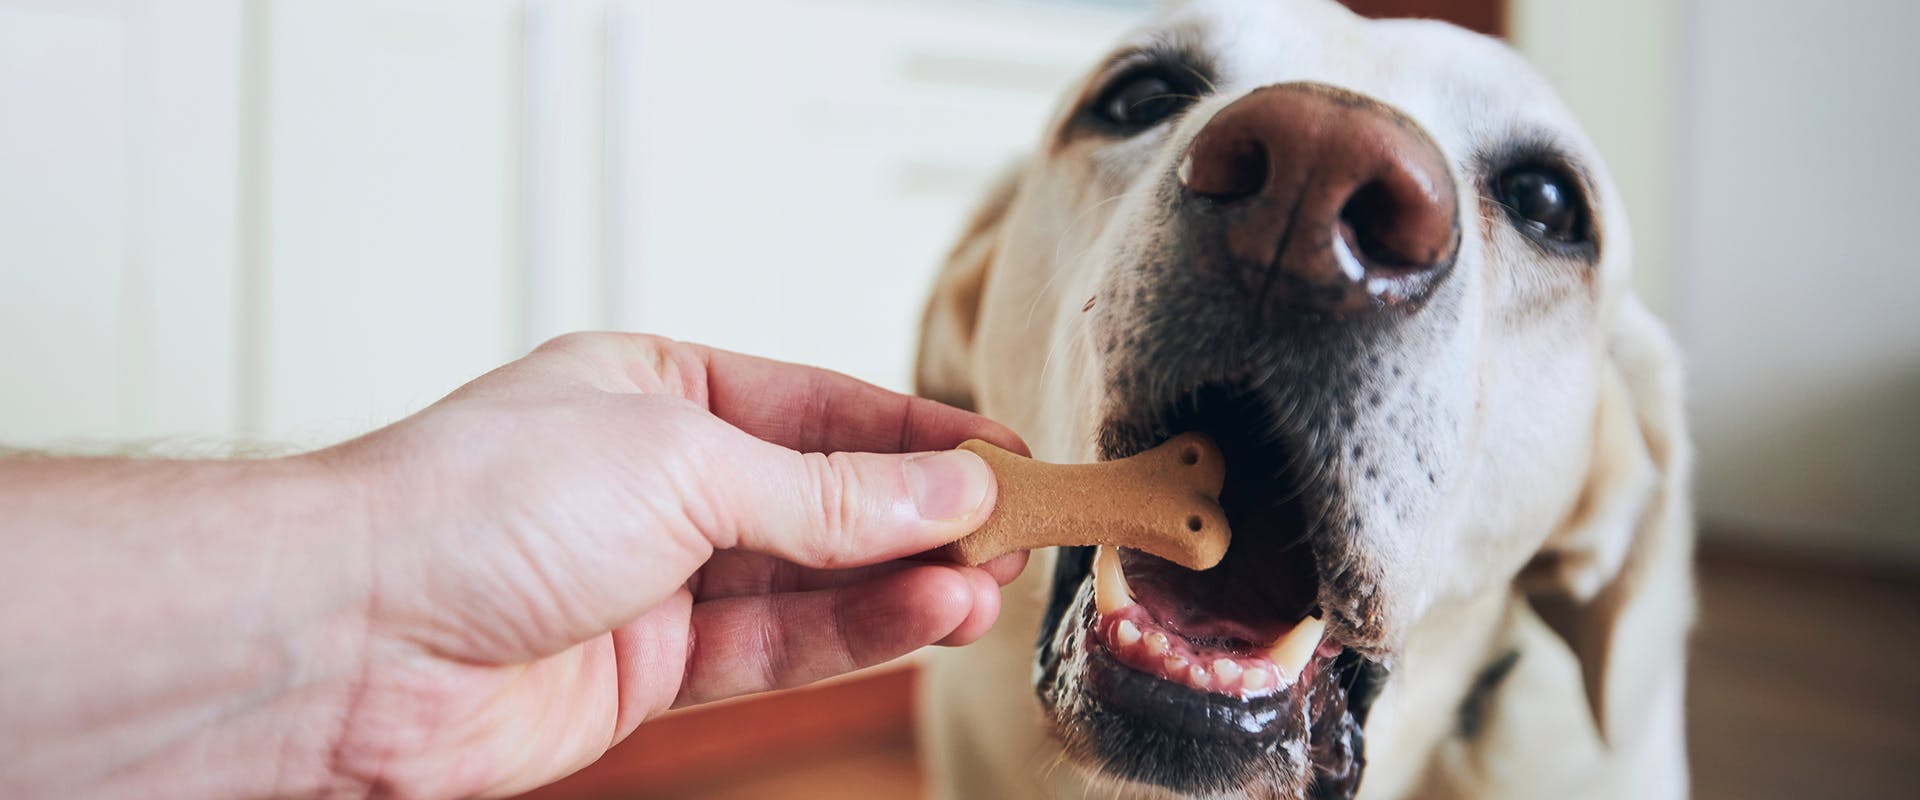 A hand feeding a dog a bone-shaped biscuit